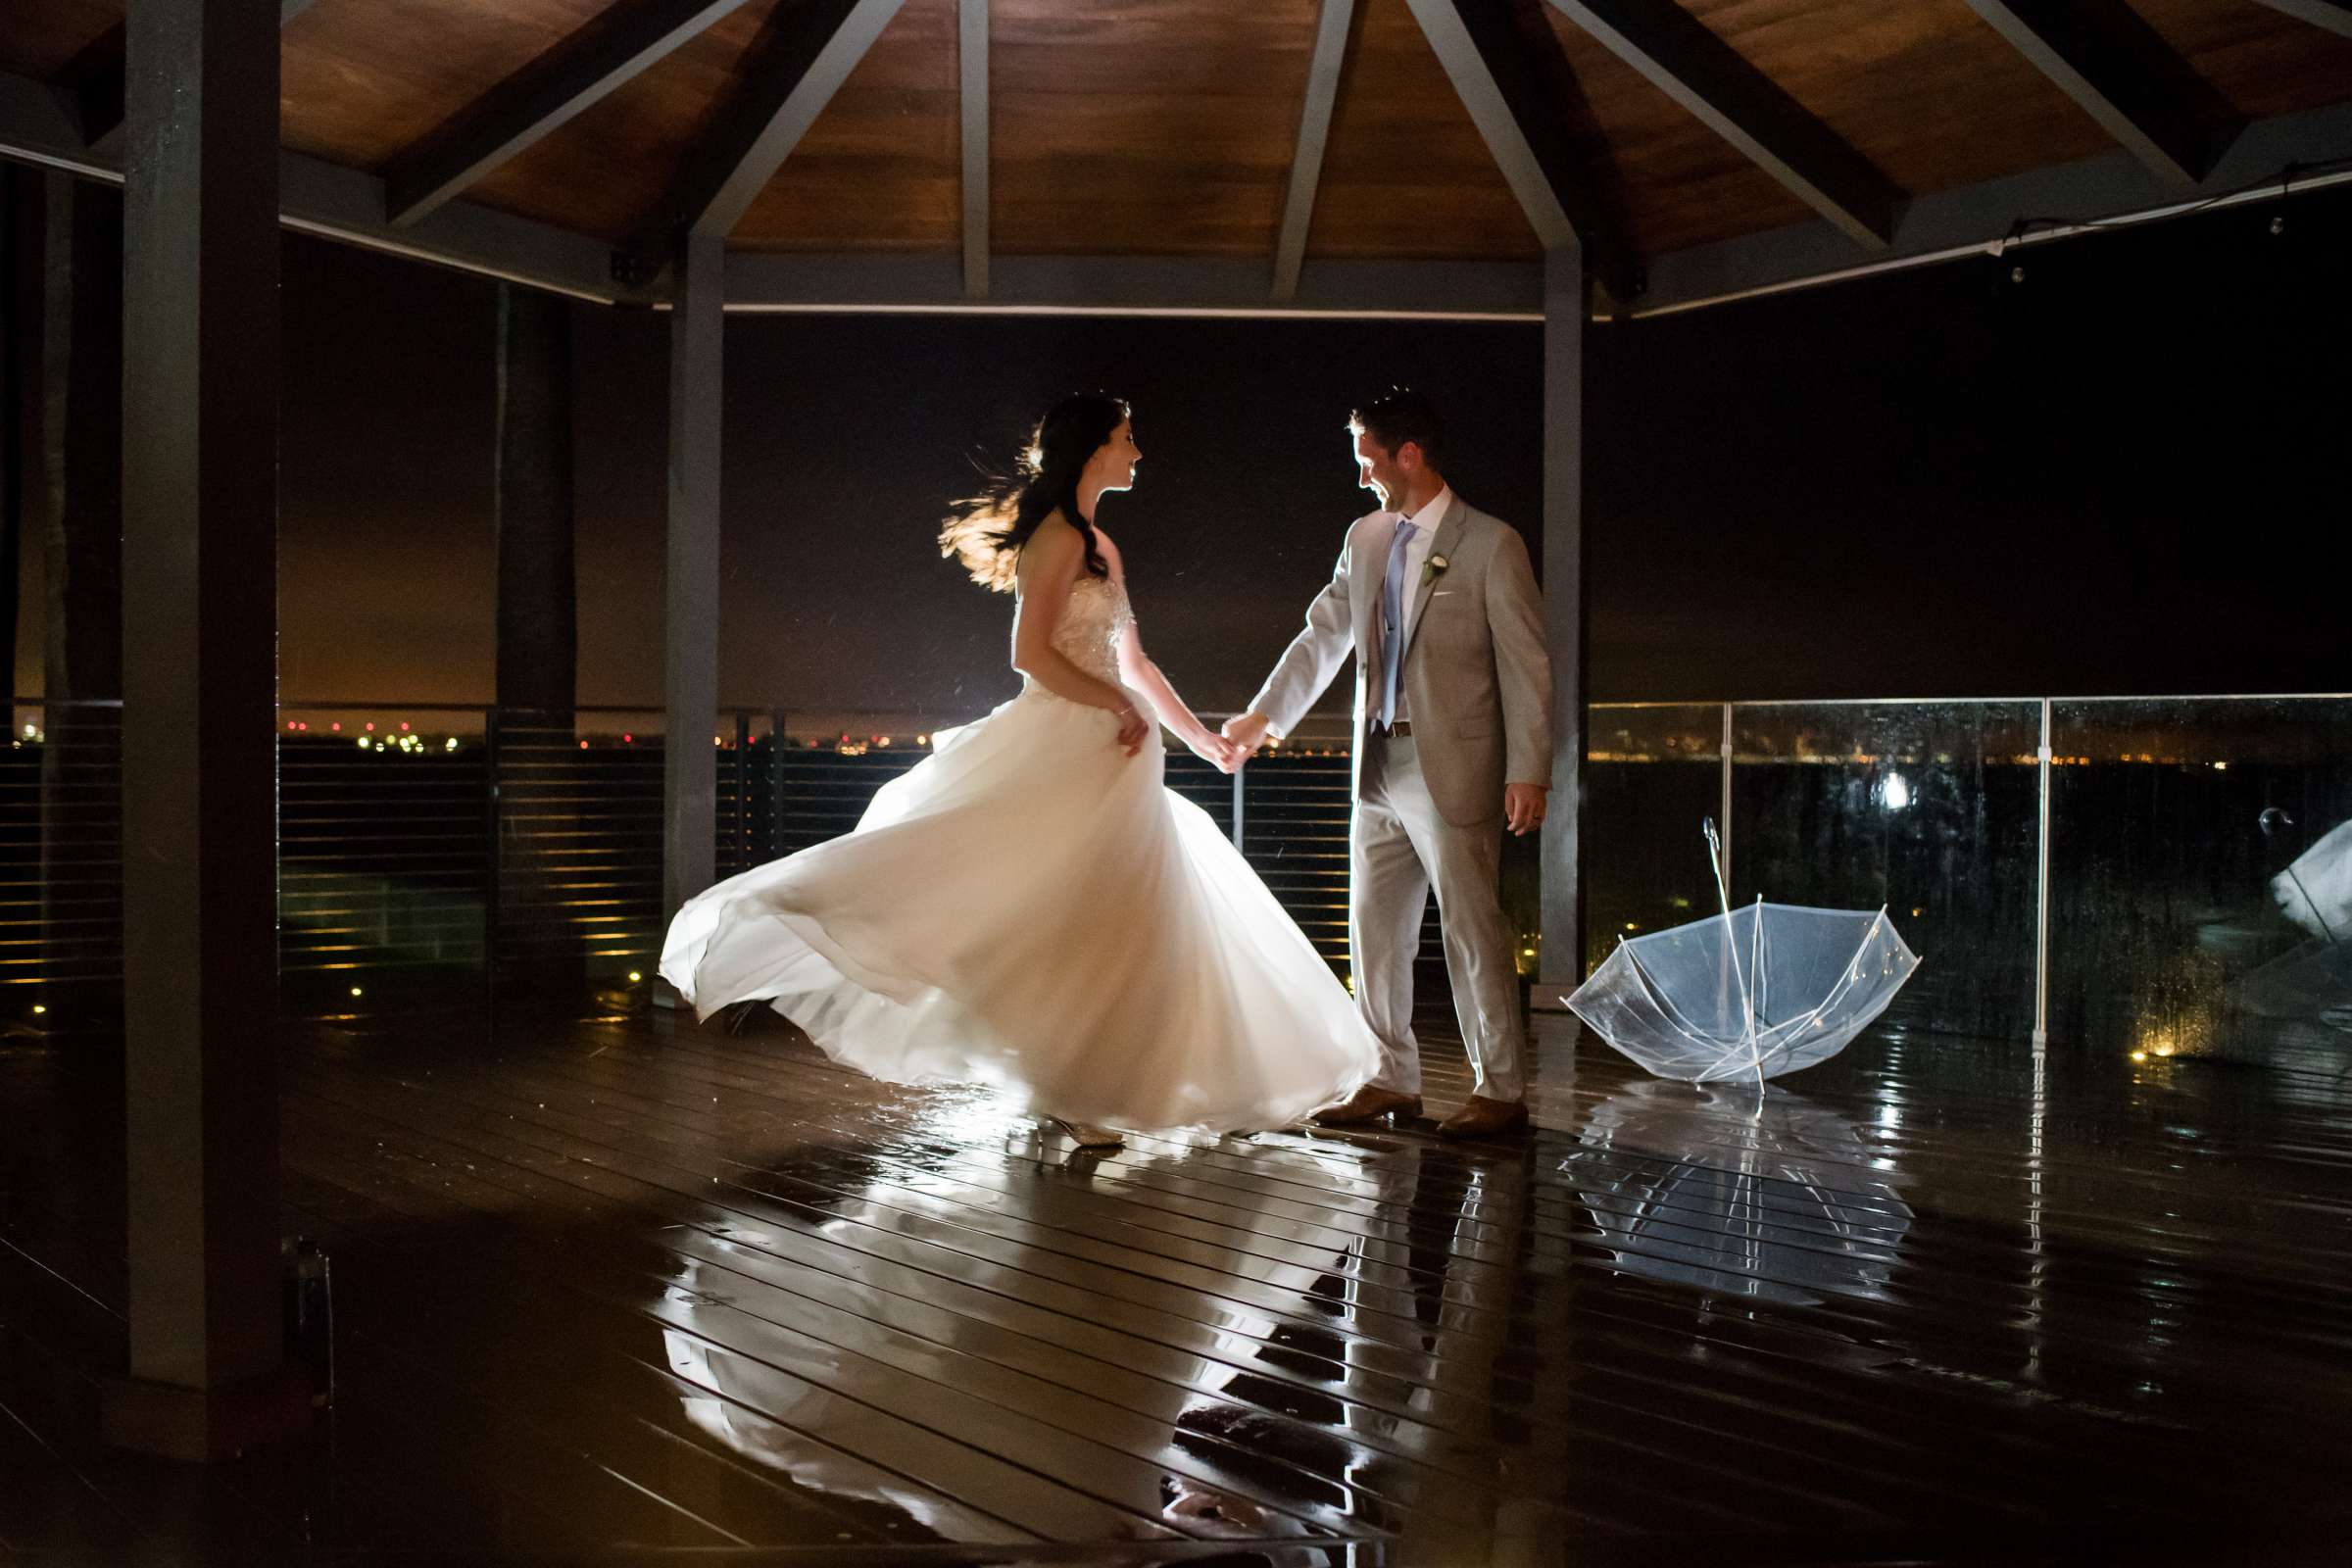 Ocean View Room Wedding, Lauren and Drew Wedding Photo #12 by True Photography